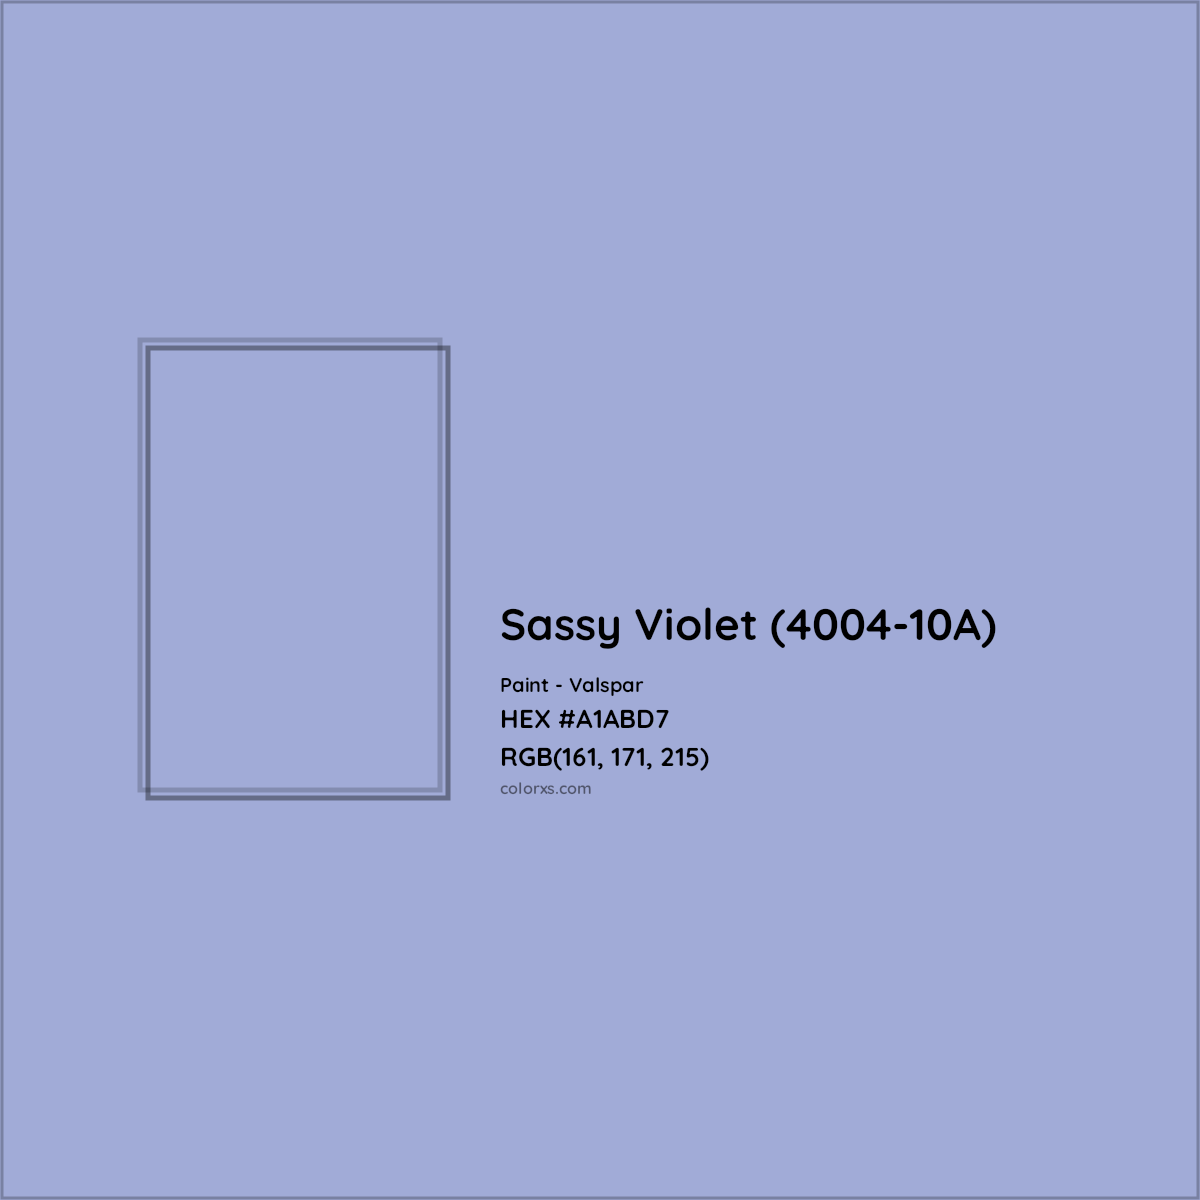 HEX #A1ABD7 Sassy Violet (4004-10A) Paint Valspar - Color Code